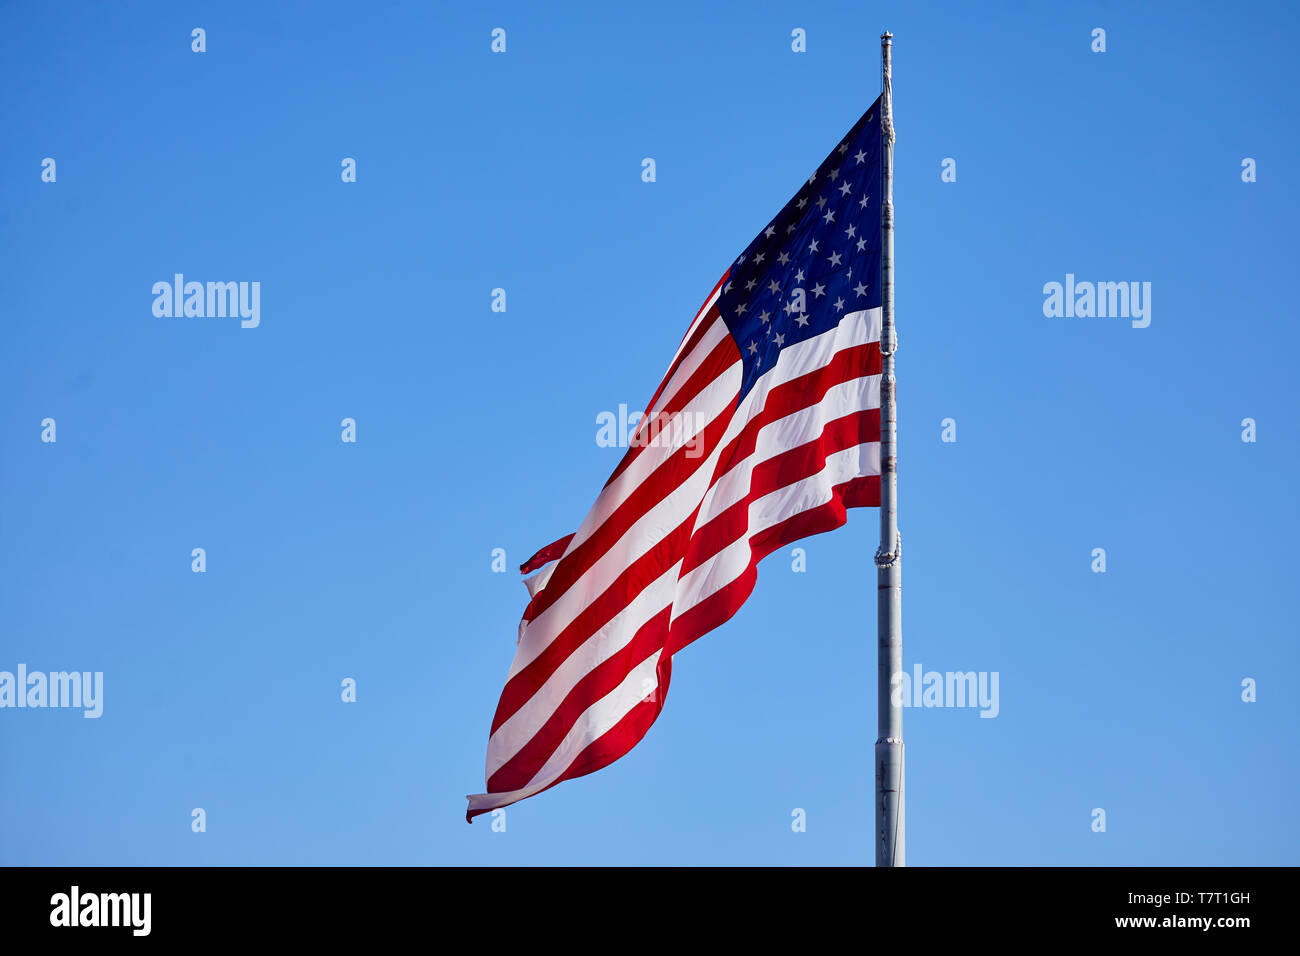 Historische Route 66 Stadt Williams, die amerikanische Flagge, die Sterne und Streifen Rot, Weiß und Blau; alte Herrlichkeit; Die Star-Spangled Banner; US-Flagge; United S Stockfoto